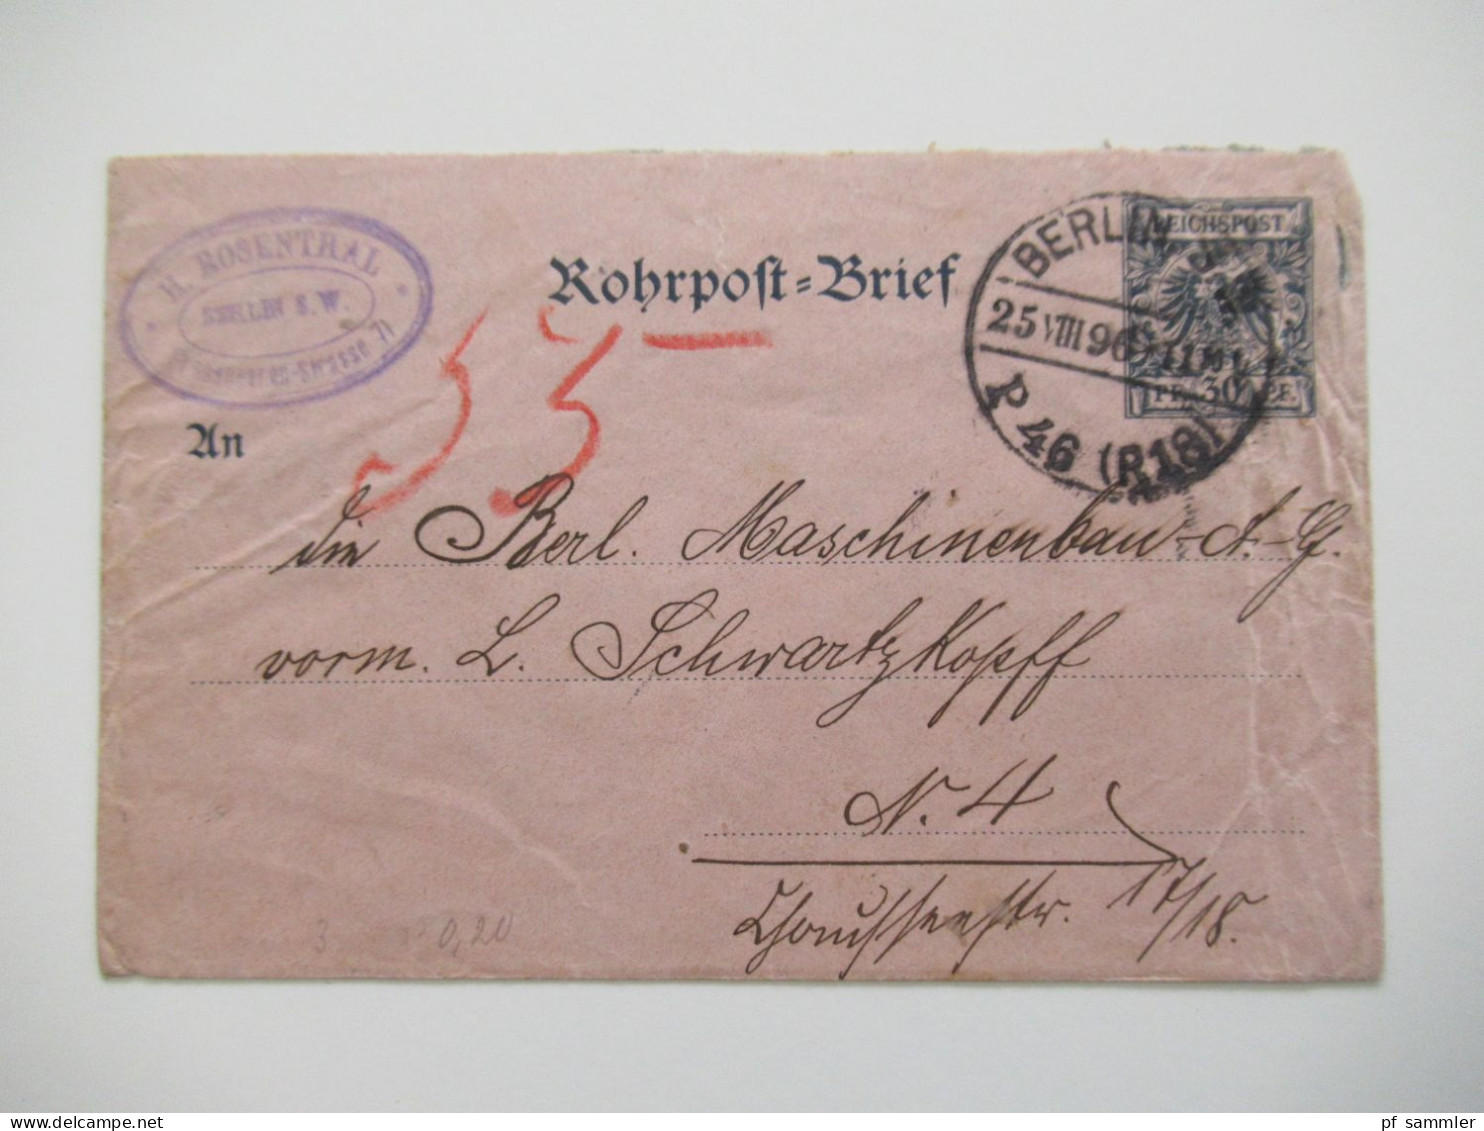 Berlin Postämter Ganzsachen Posten mit Rohrpost!! Ab 1875 - ca. 1910 insgesamt 110 Stück!! Interessanter Stöberposten!